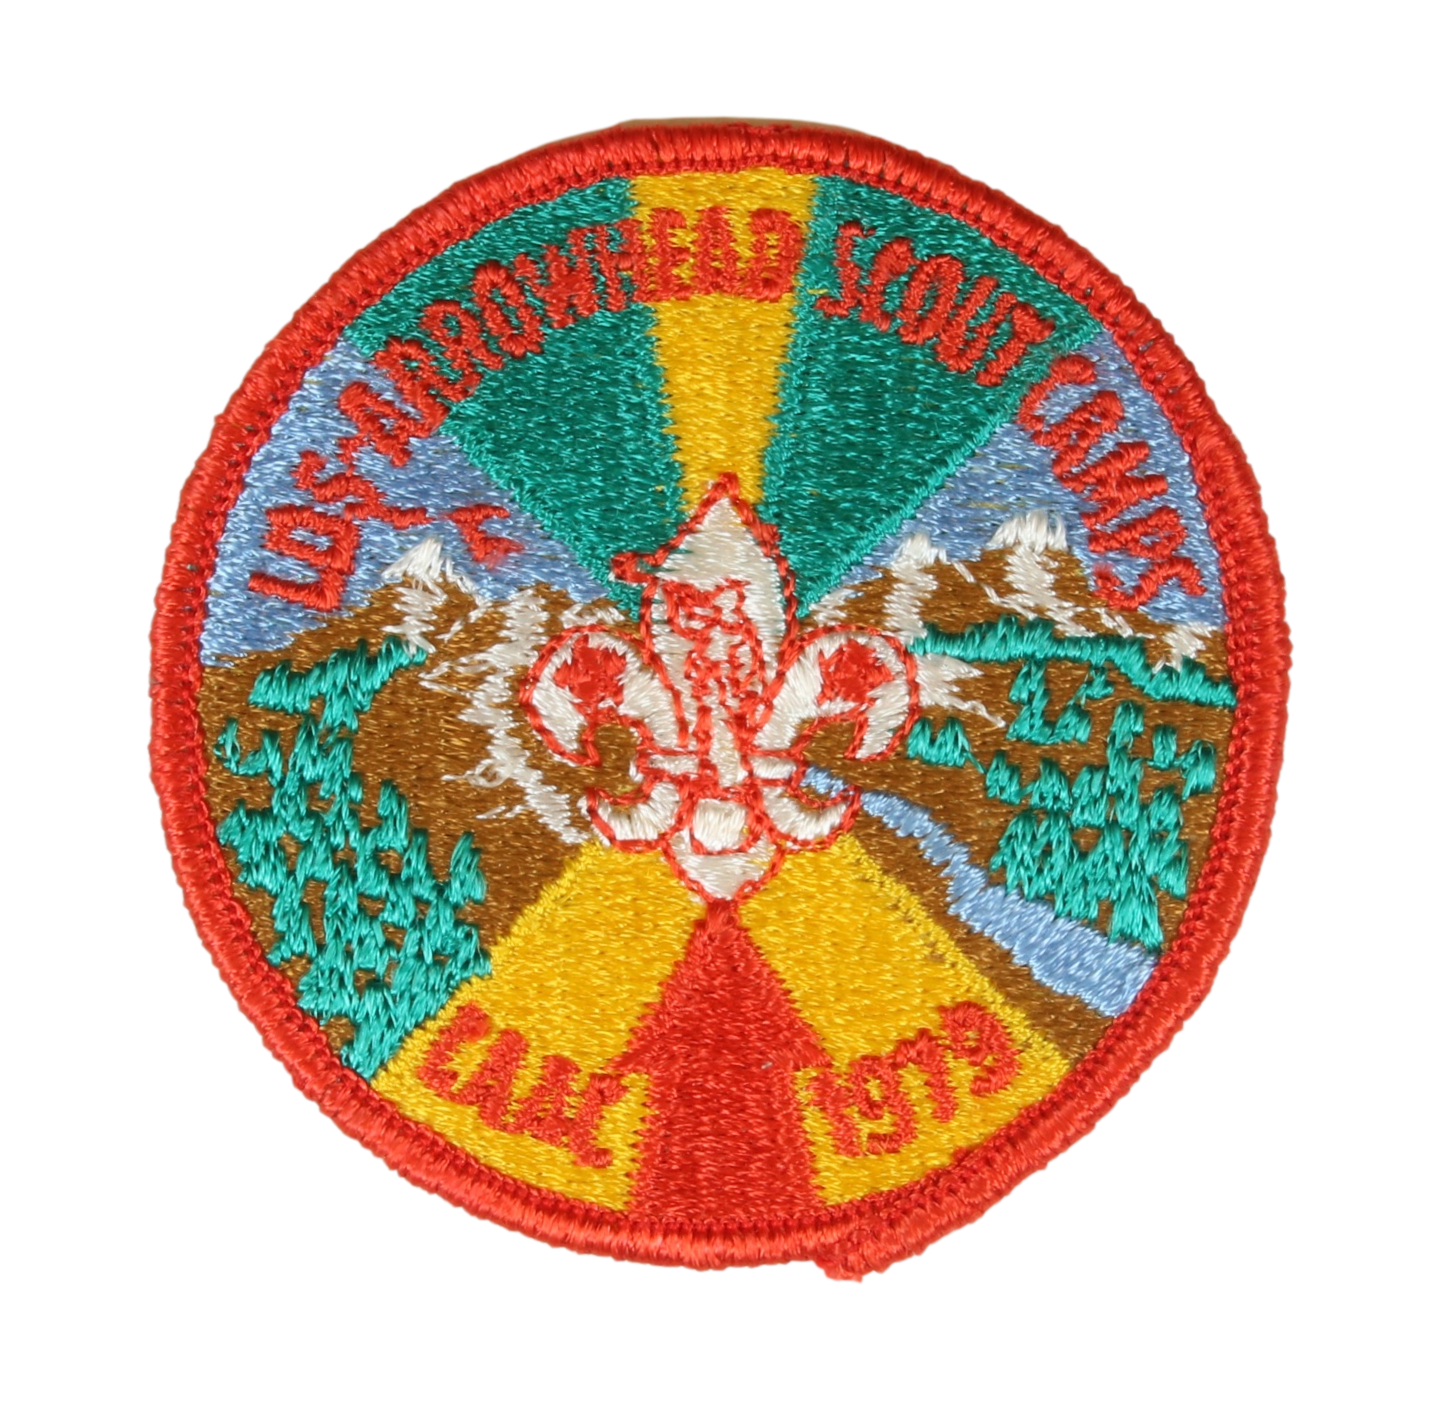 1979 Arrowhead Scout Camp LDS Patch